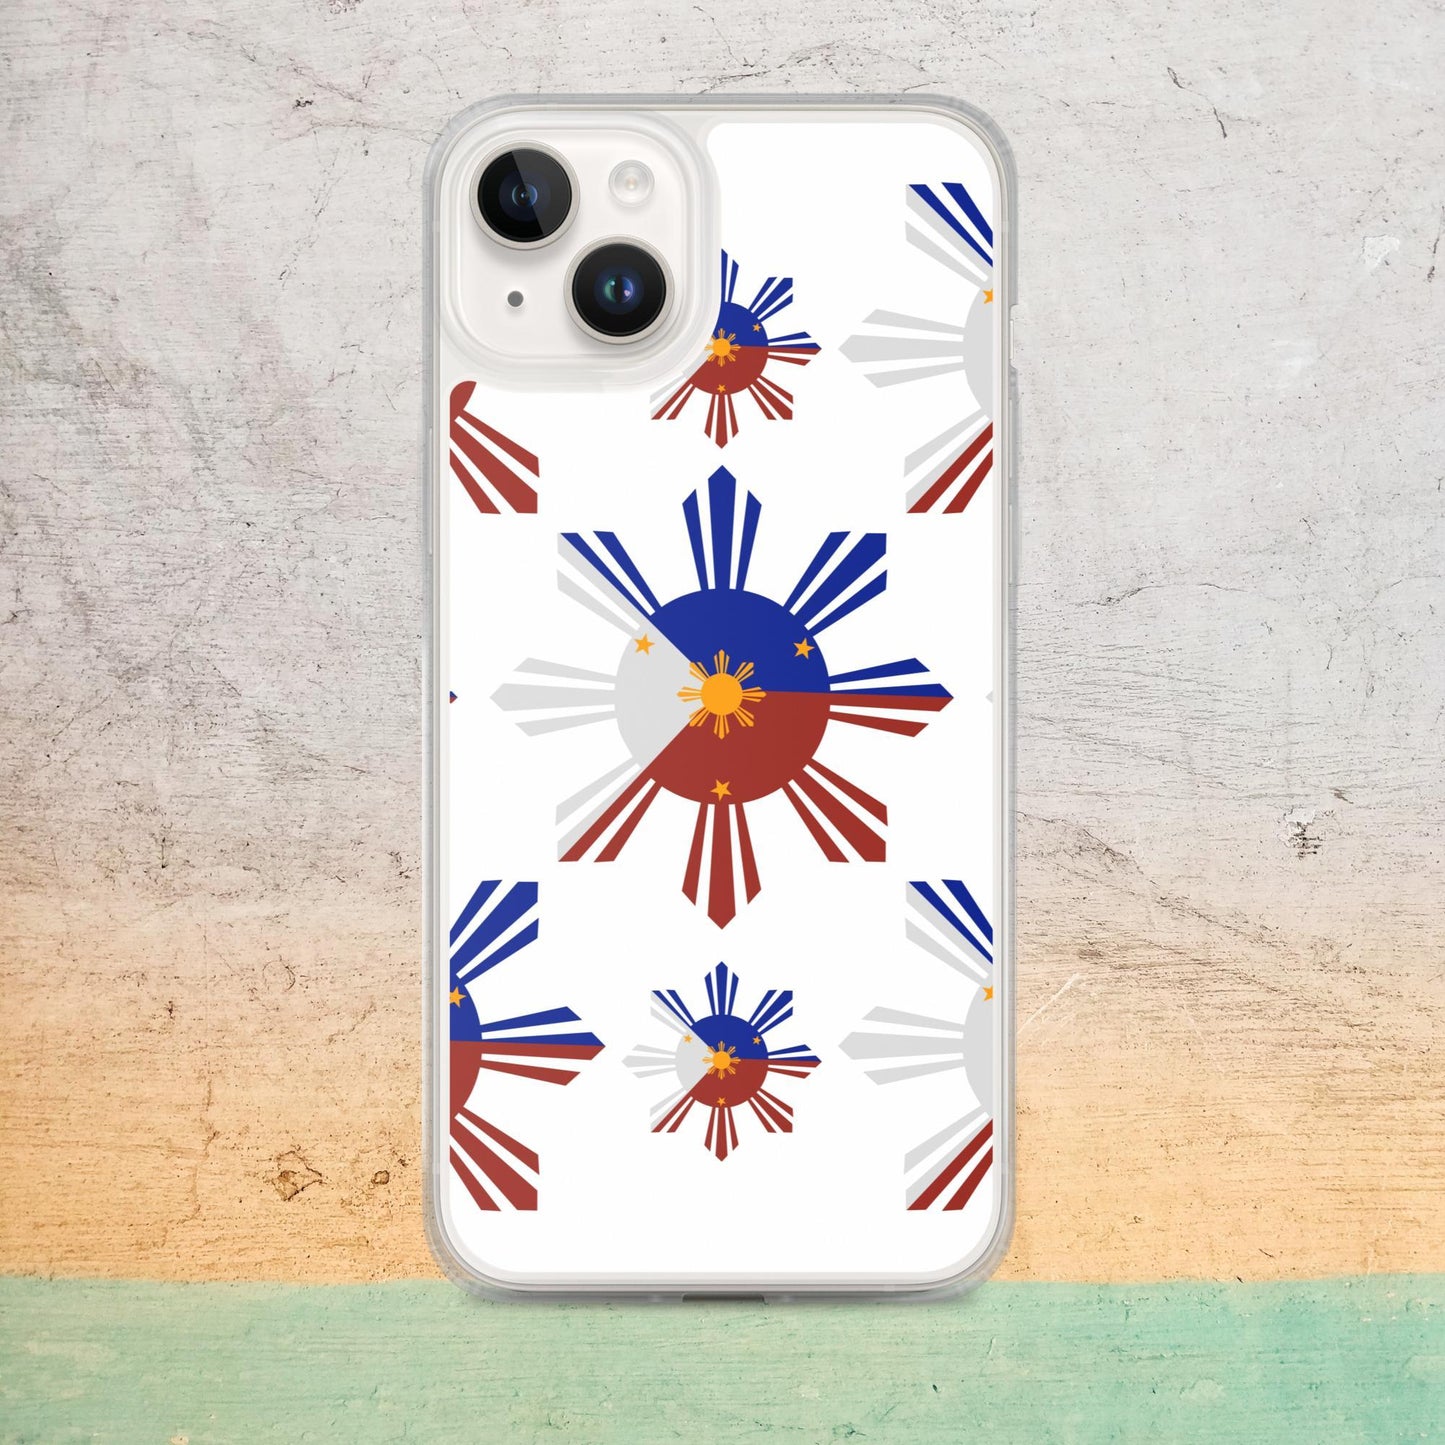 iPhone Case - Philippines